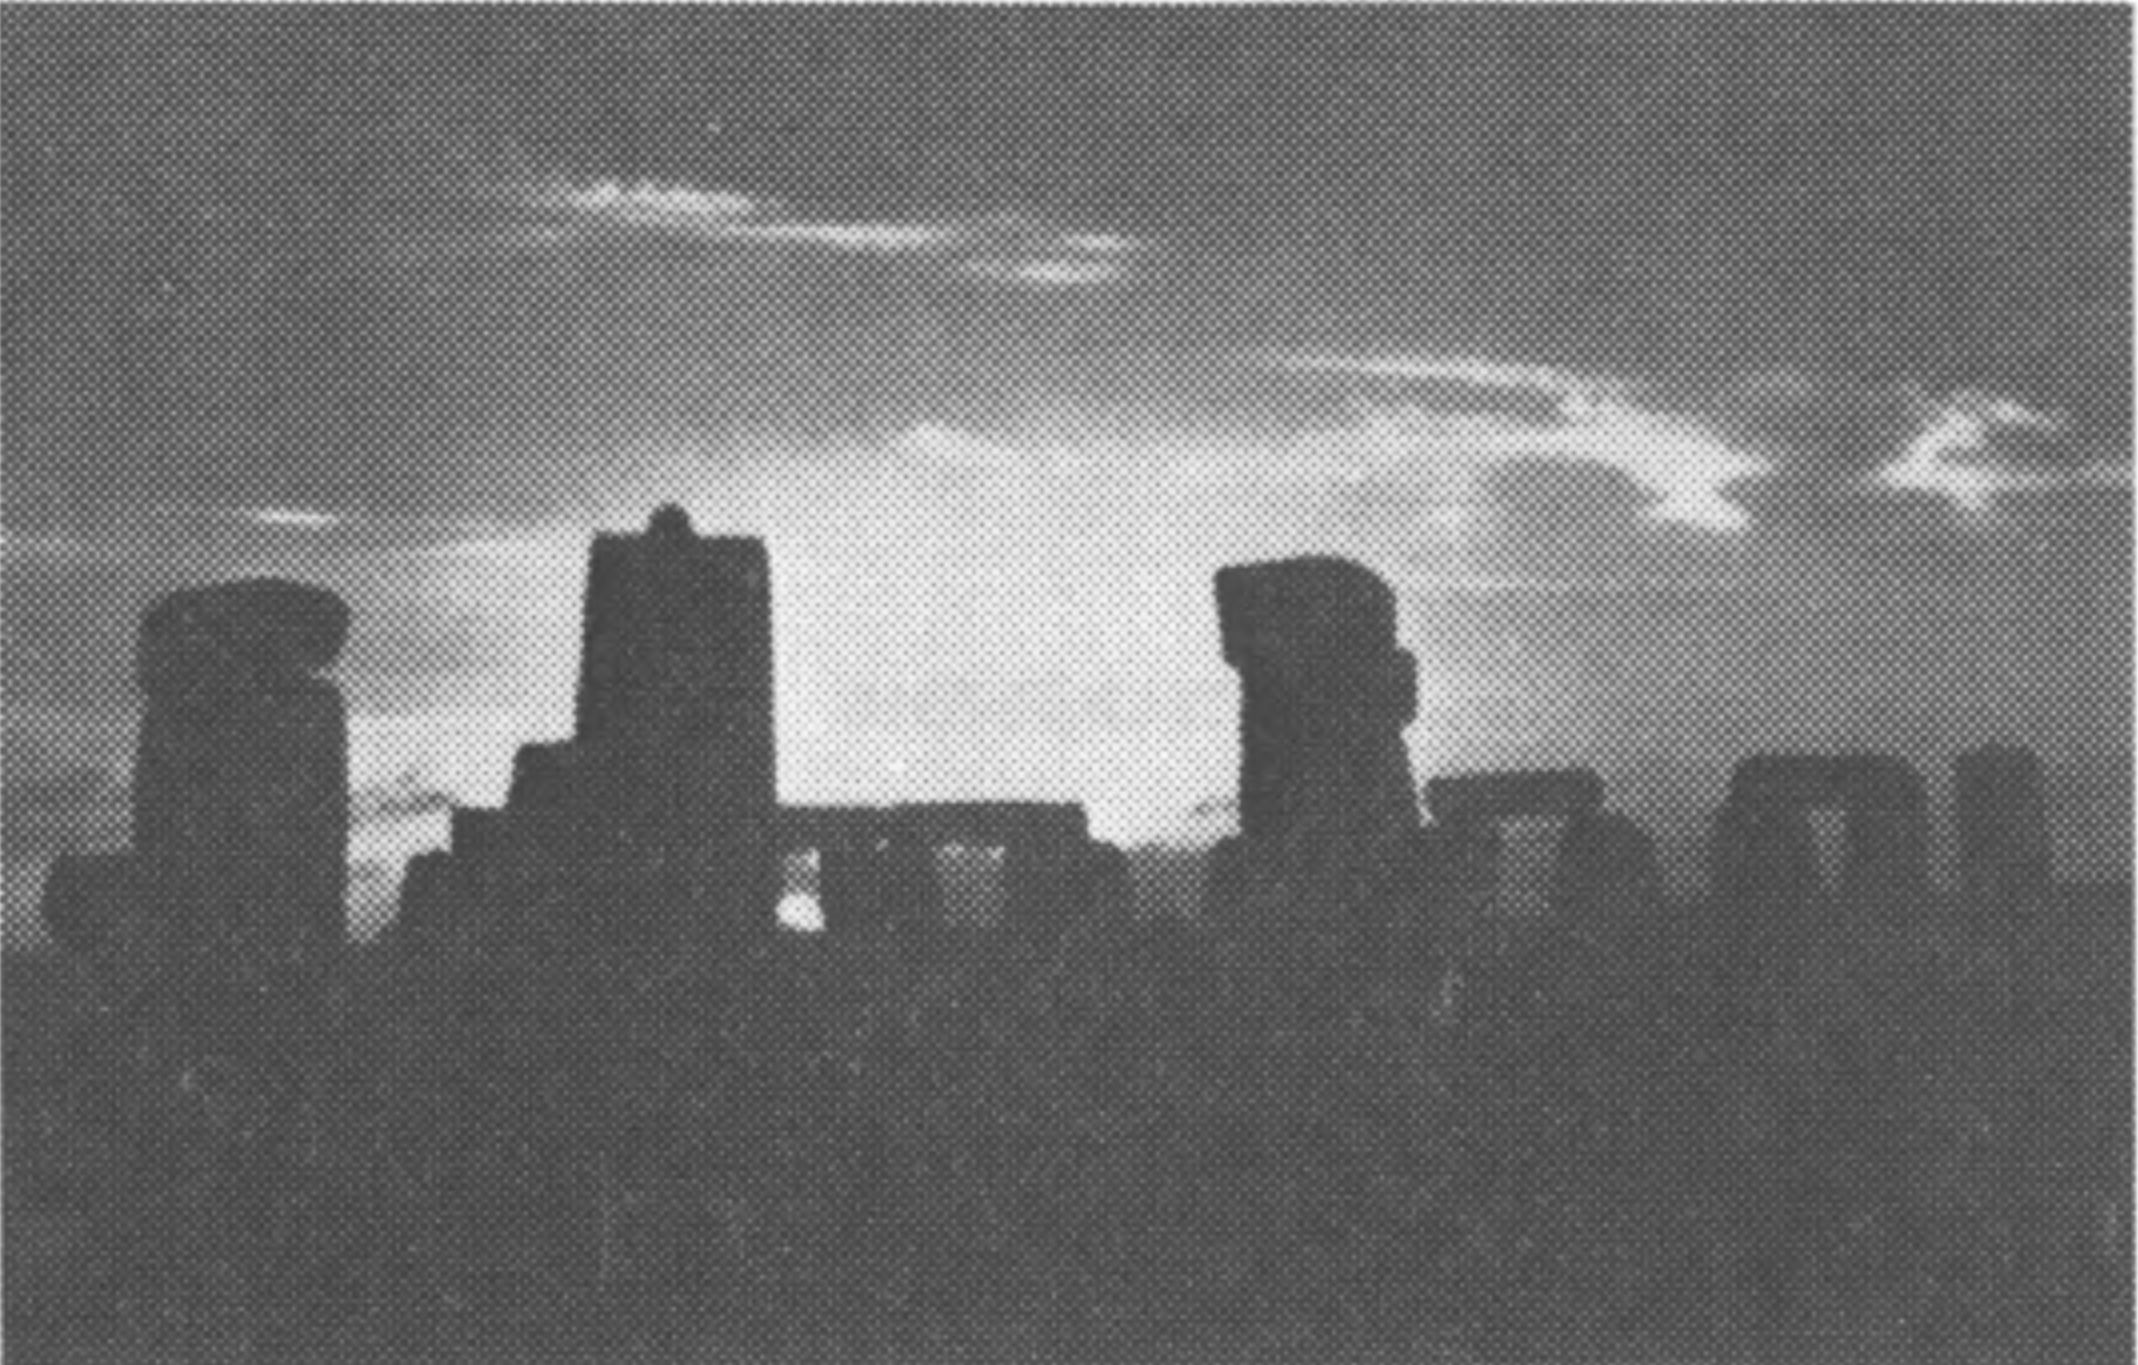 Фото 20. Восход Солнца в день летнего солнцестояния 22 июня 1962 г., снятый в направлении главной оси Стоунхенджа через сохранившуюся половину большого трилита и сарсеновую арку № 30—1 на Пяточный камень